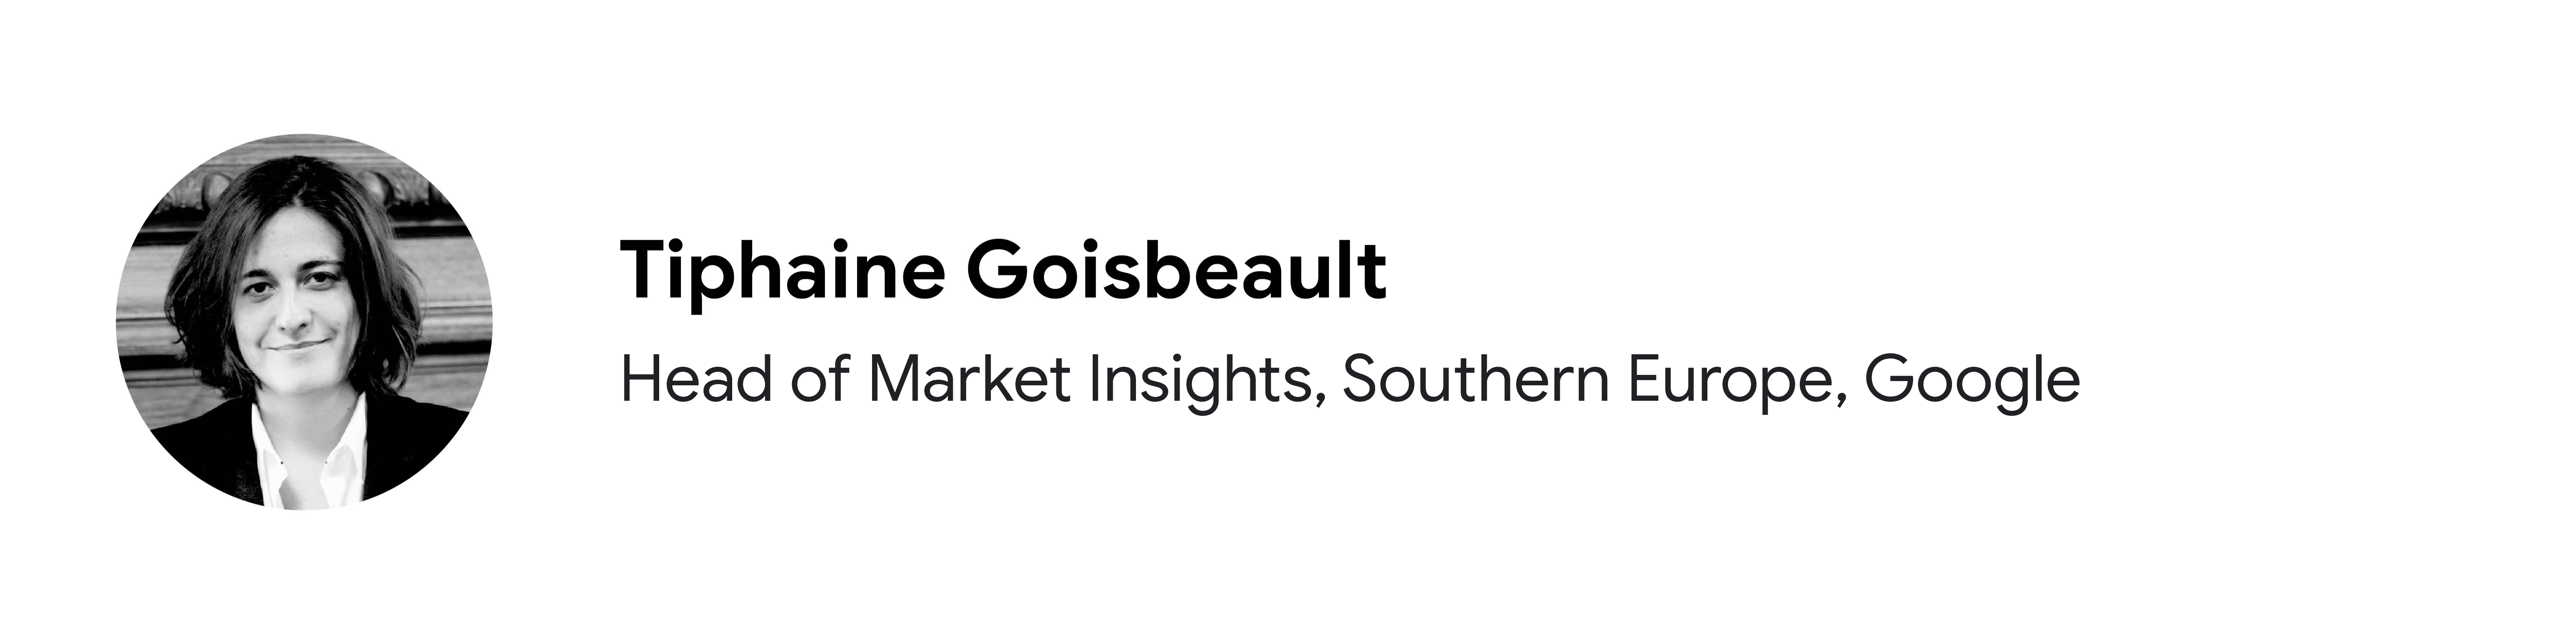 Google Southern Europe'ta Head of Market Insights pozisyonunda görev yapan katılımcı Tiphaine Goisbeault'nun siyah beyaz portre fotoğrafı